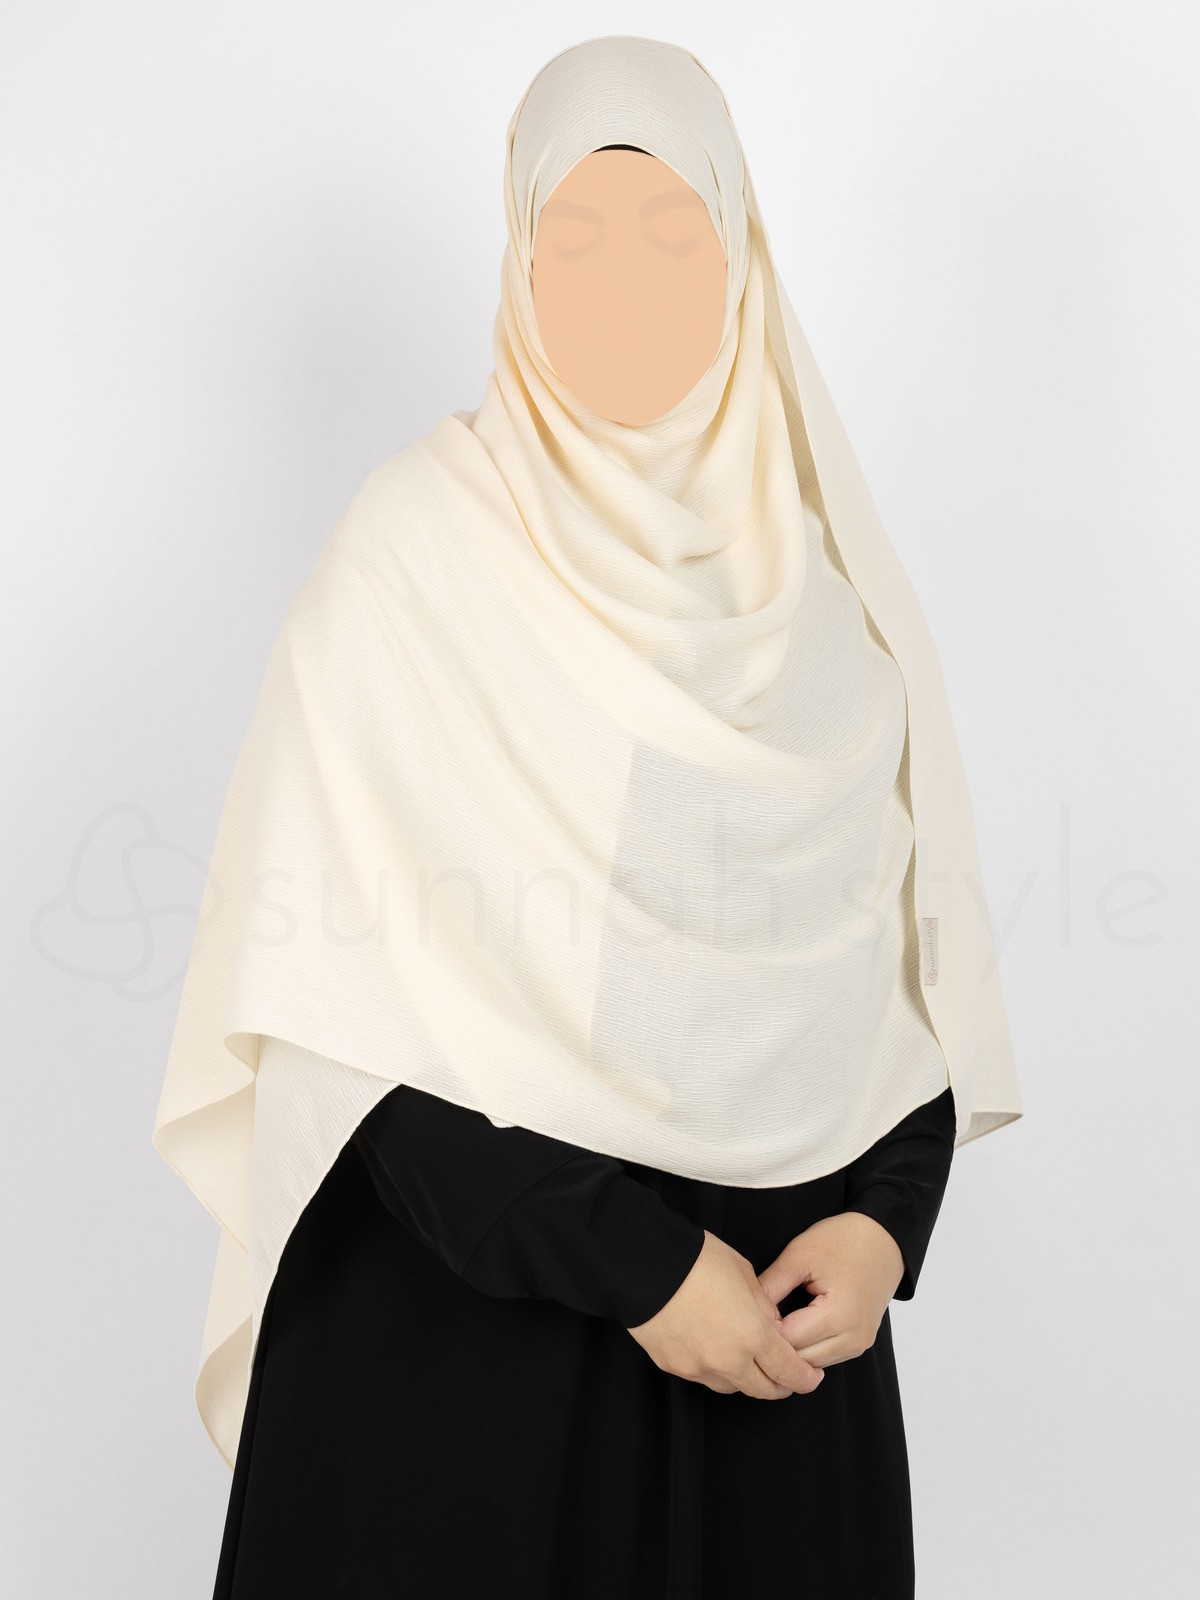 Sunnah Style - Brushed Shayla - XL (Ivory)